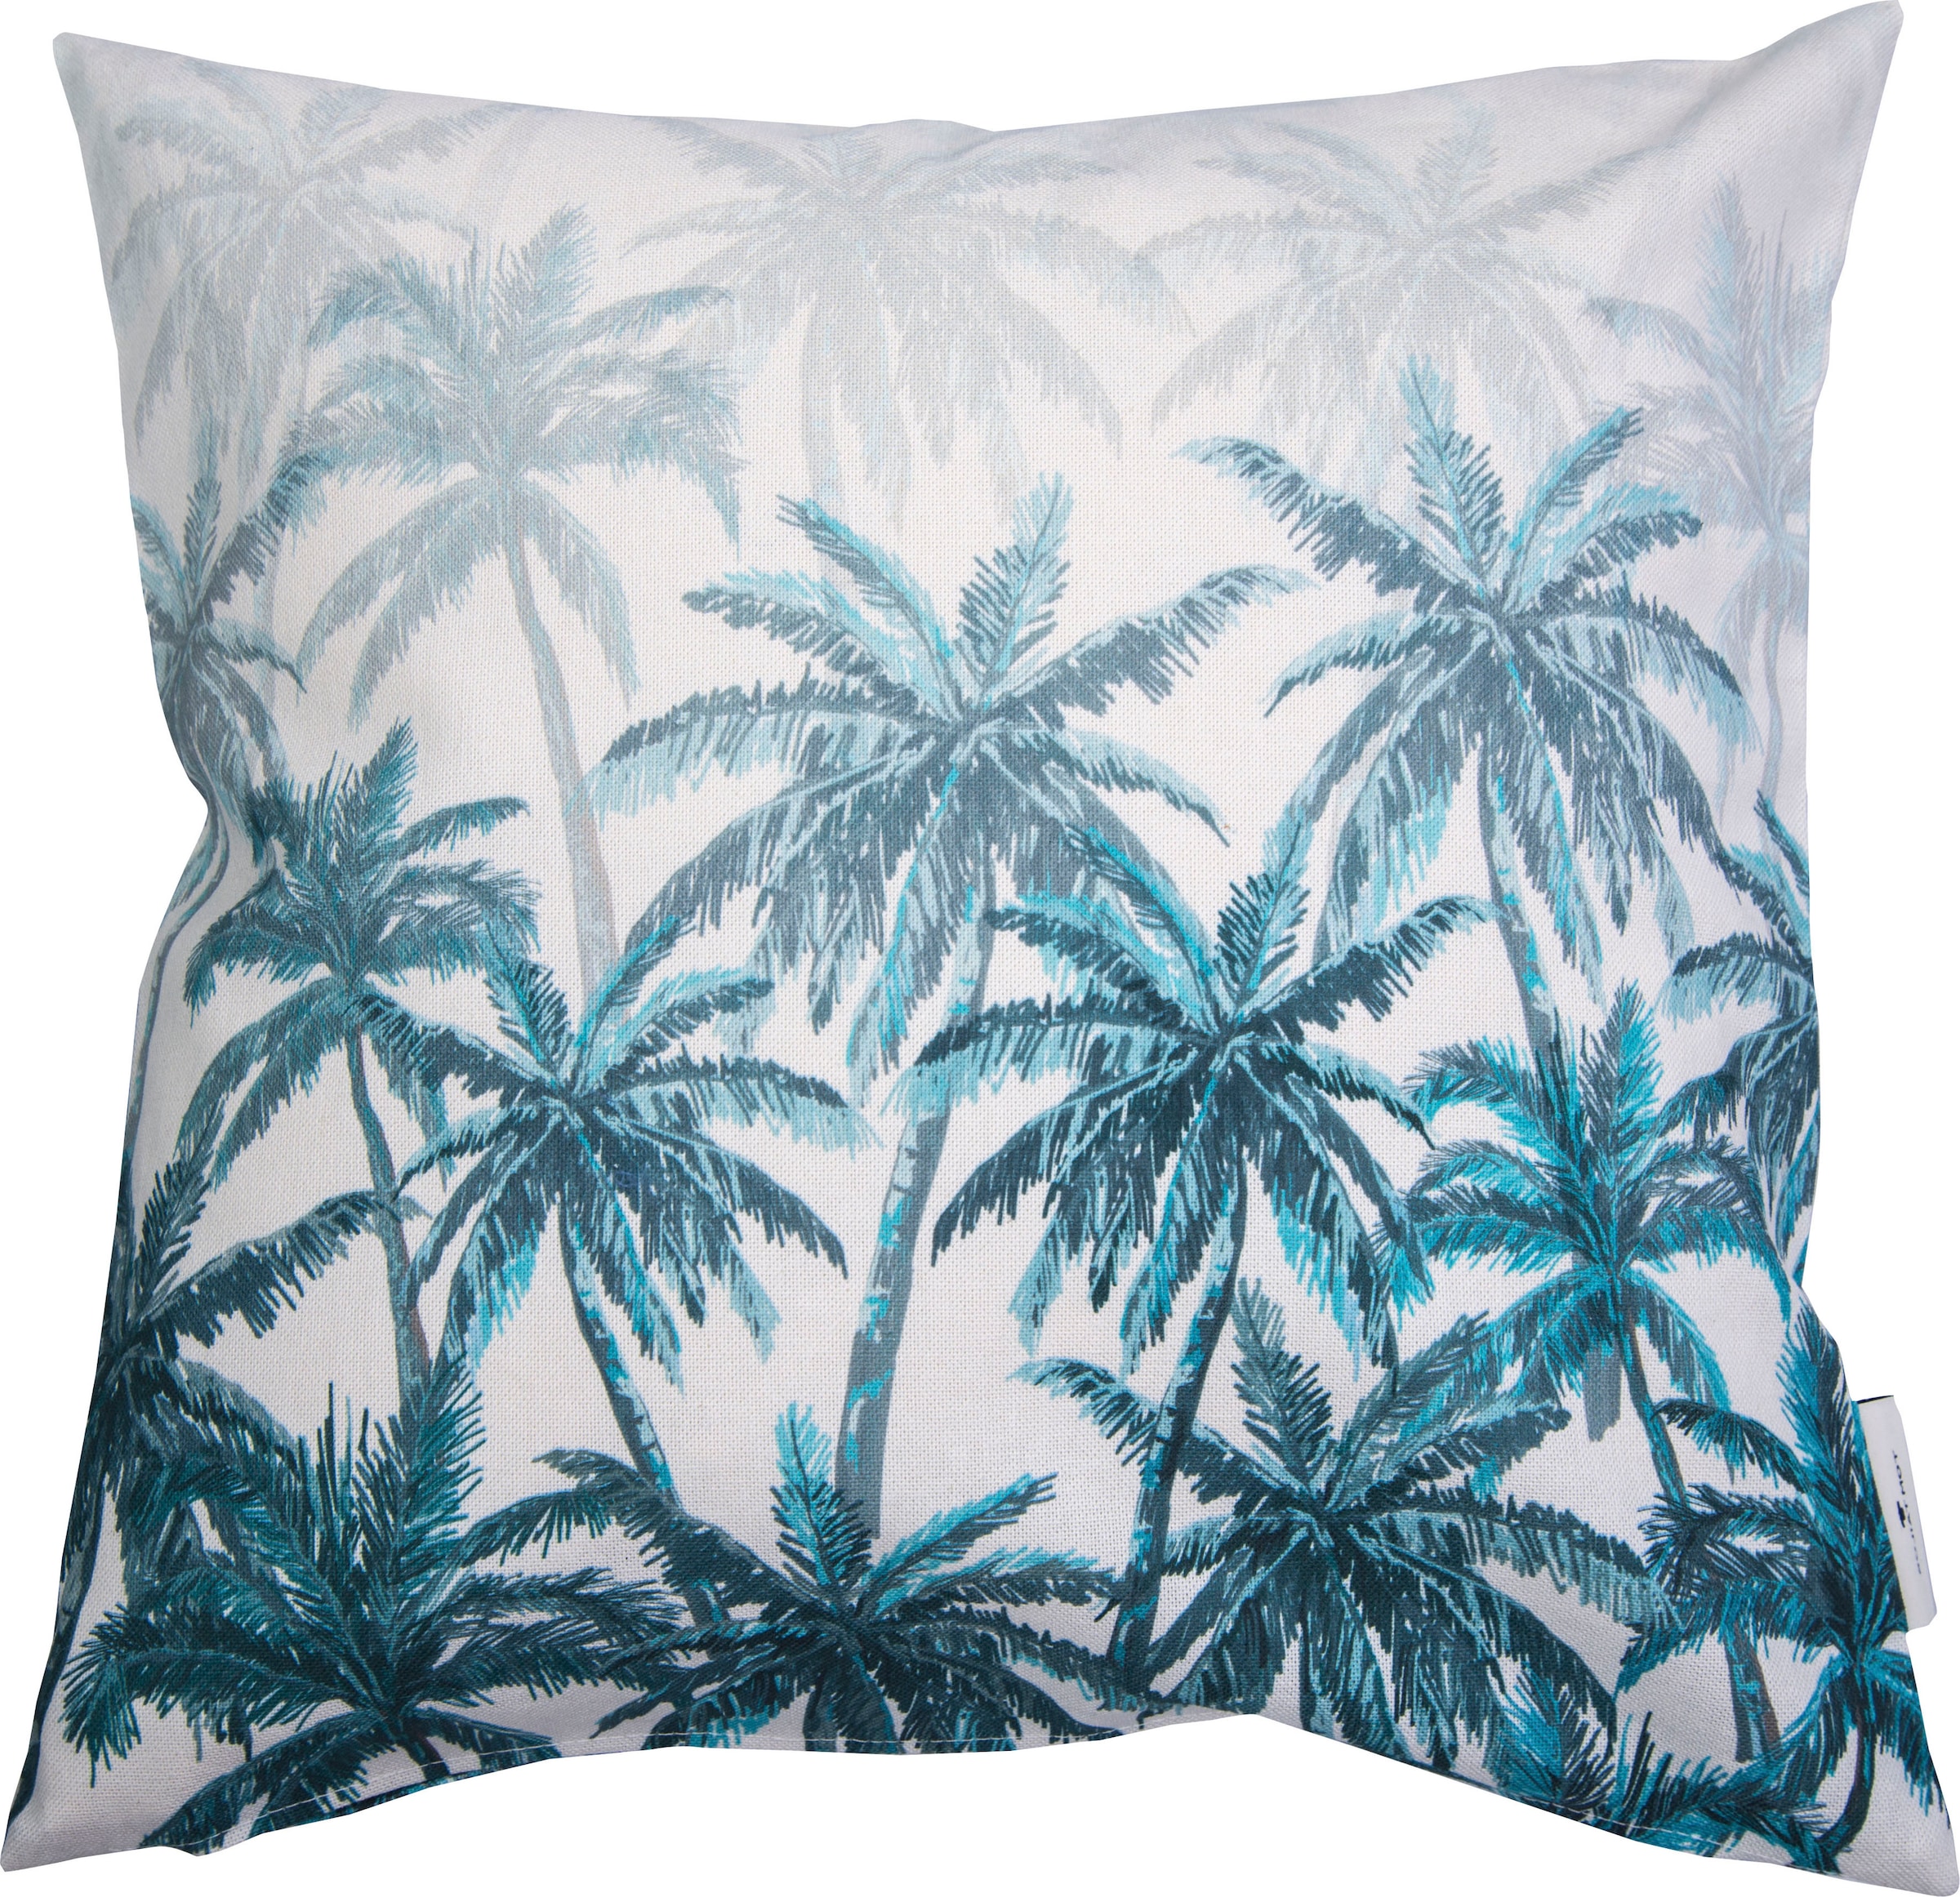 TOM TAILOR HOME Dekokissen »Blurred Palm Forest«, mit Palmenmotiven, Kissenhülle  ohne Füllung, 1 Stück im OTTO-Shop